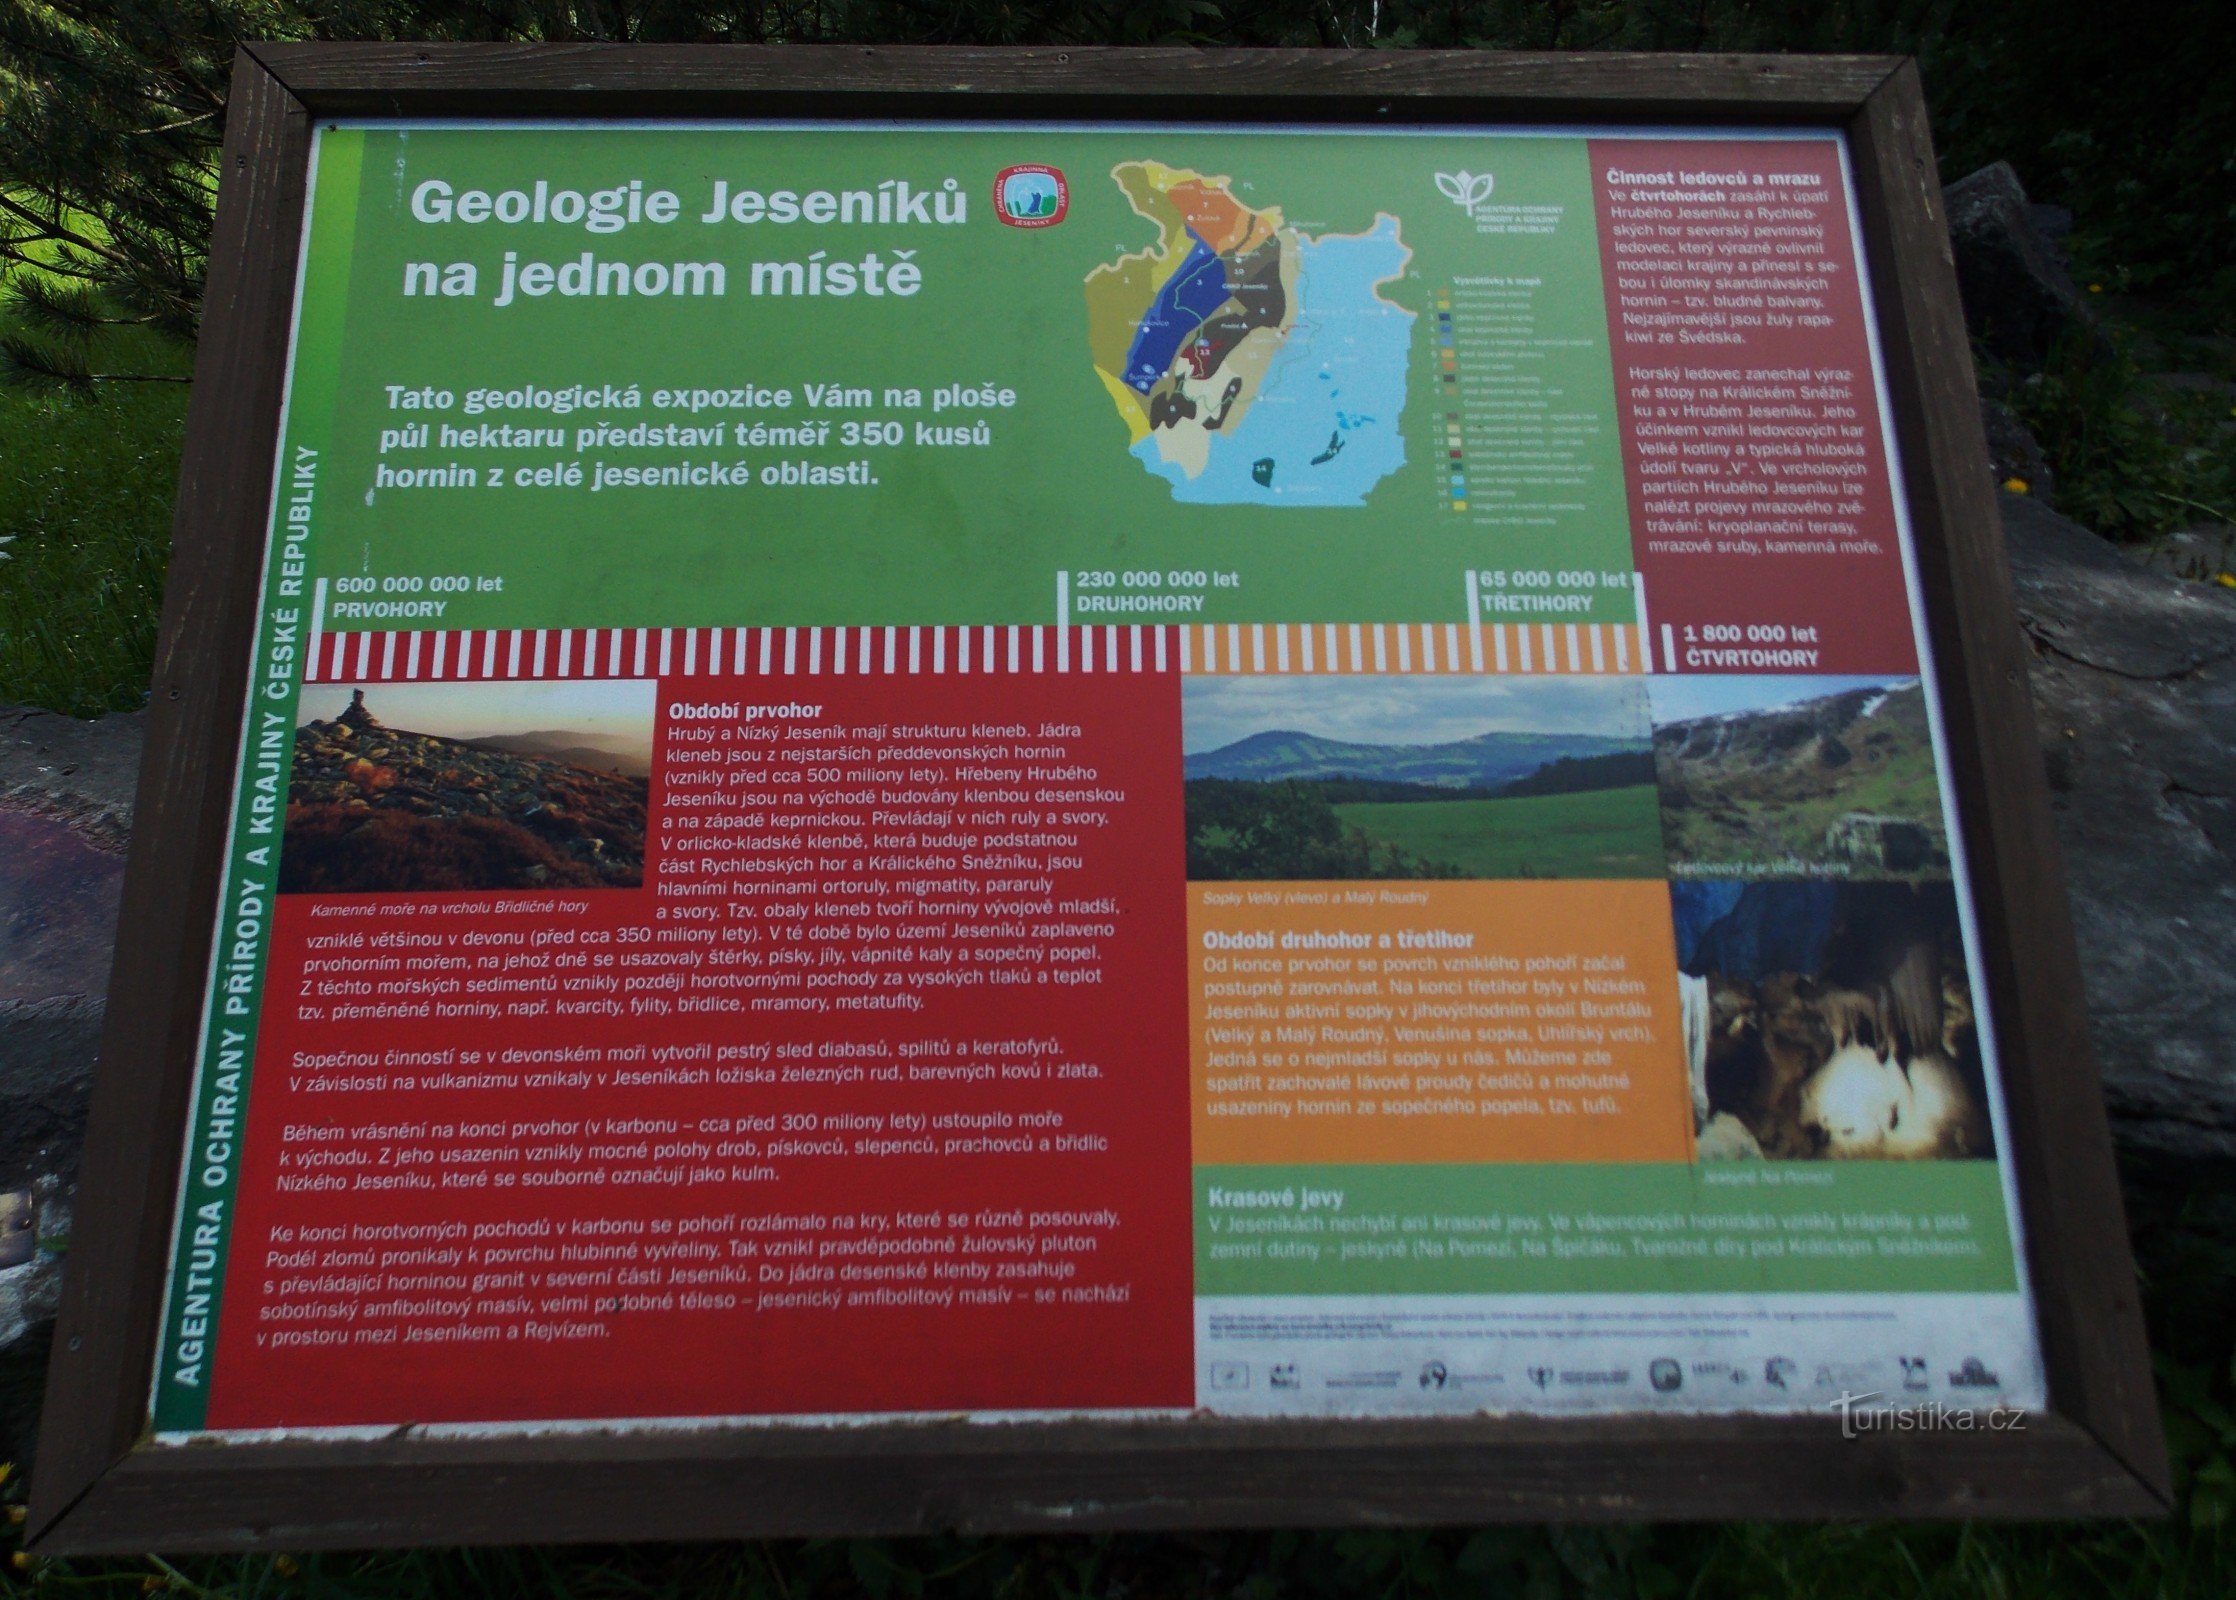 Ein interessanter Punkt in Karlová Studánka - eine geologische Ausstellung von Steinen